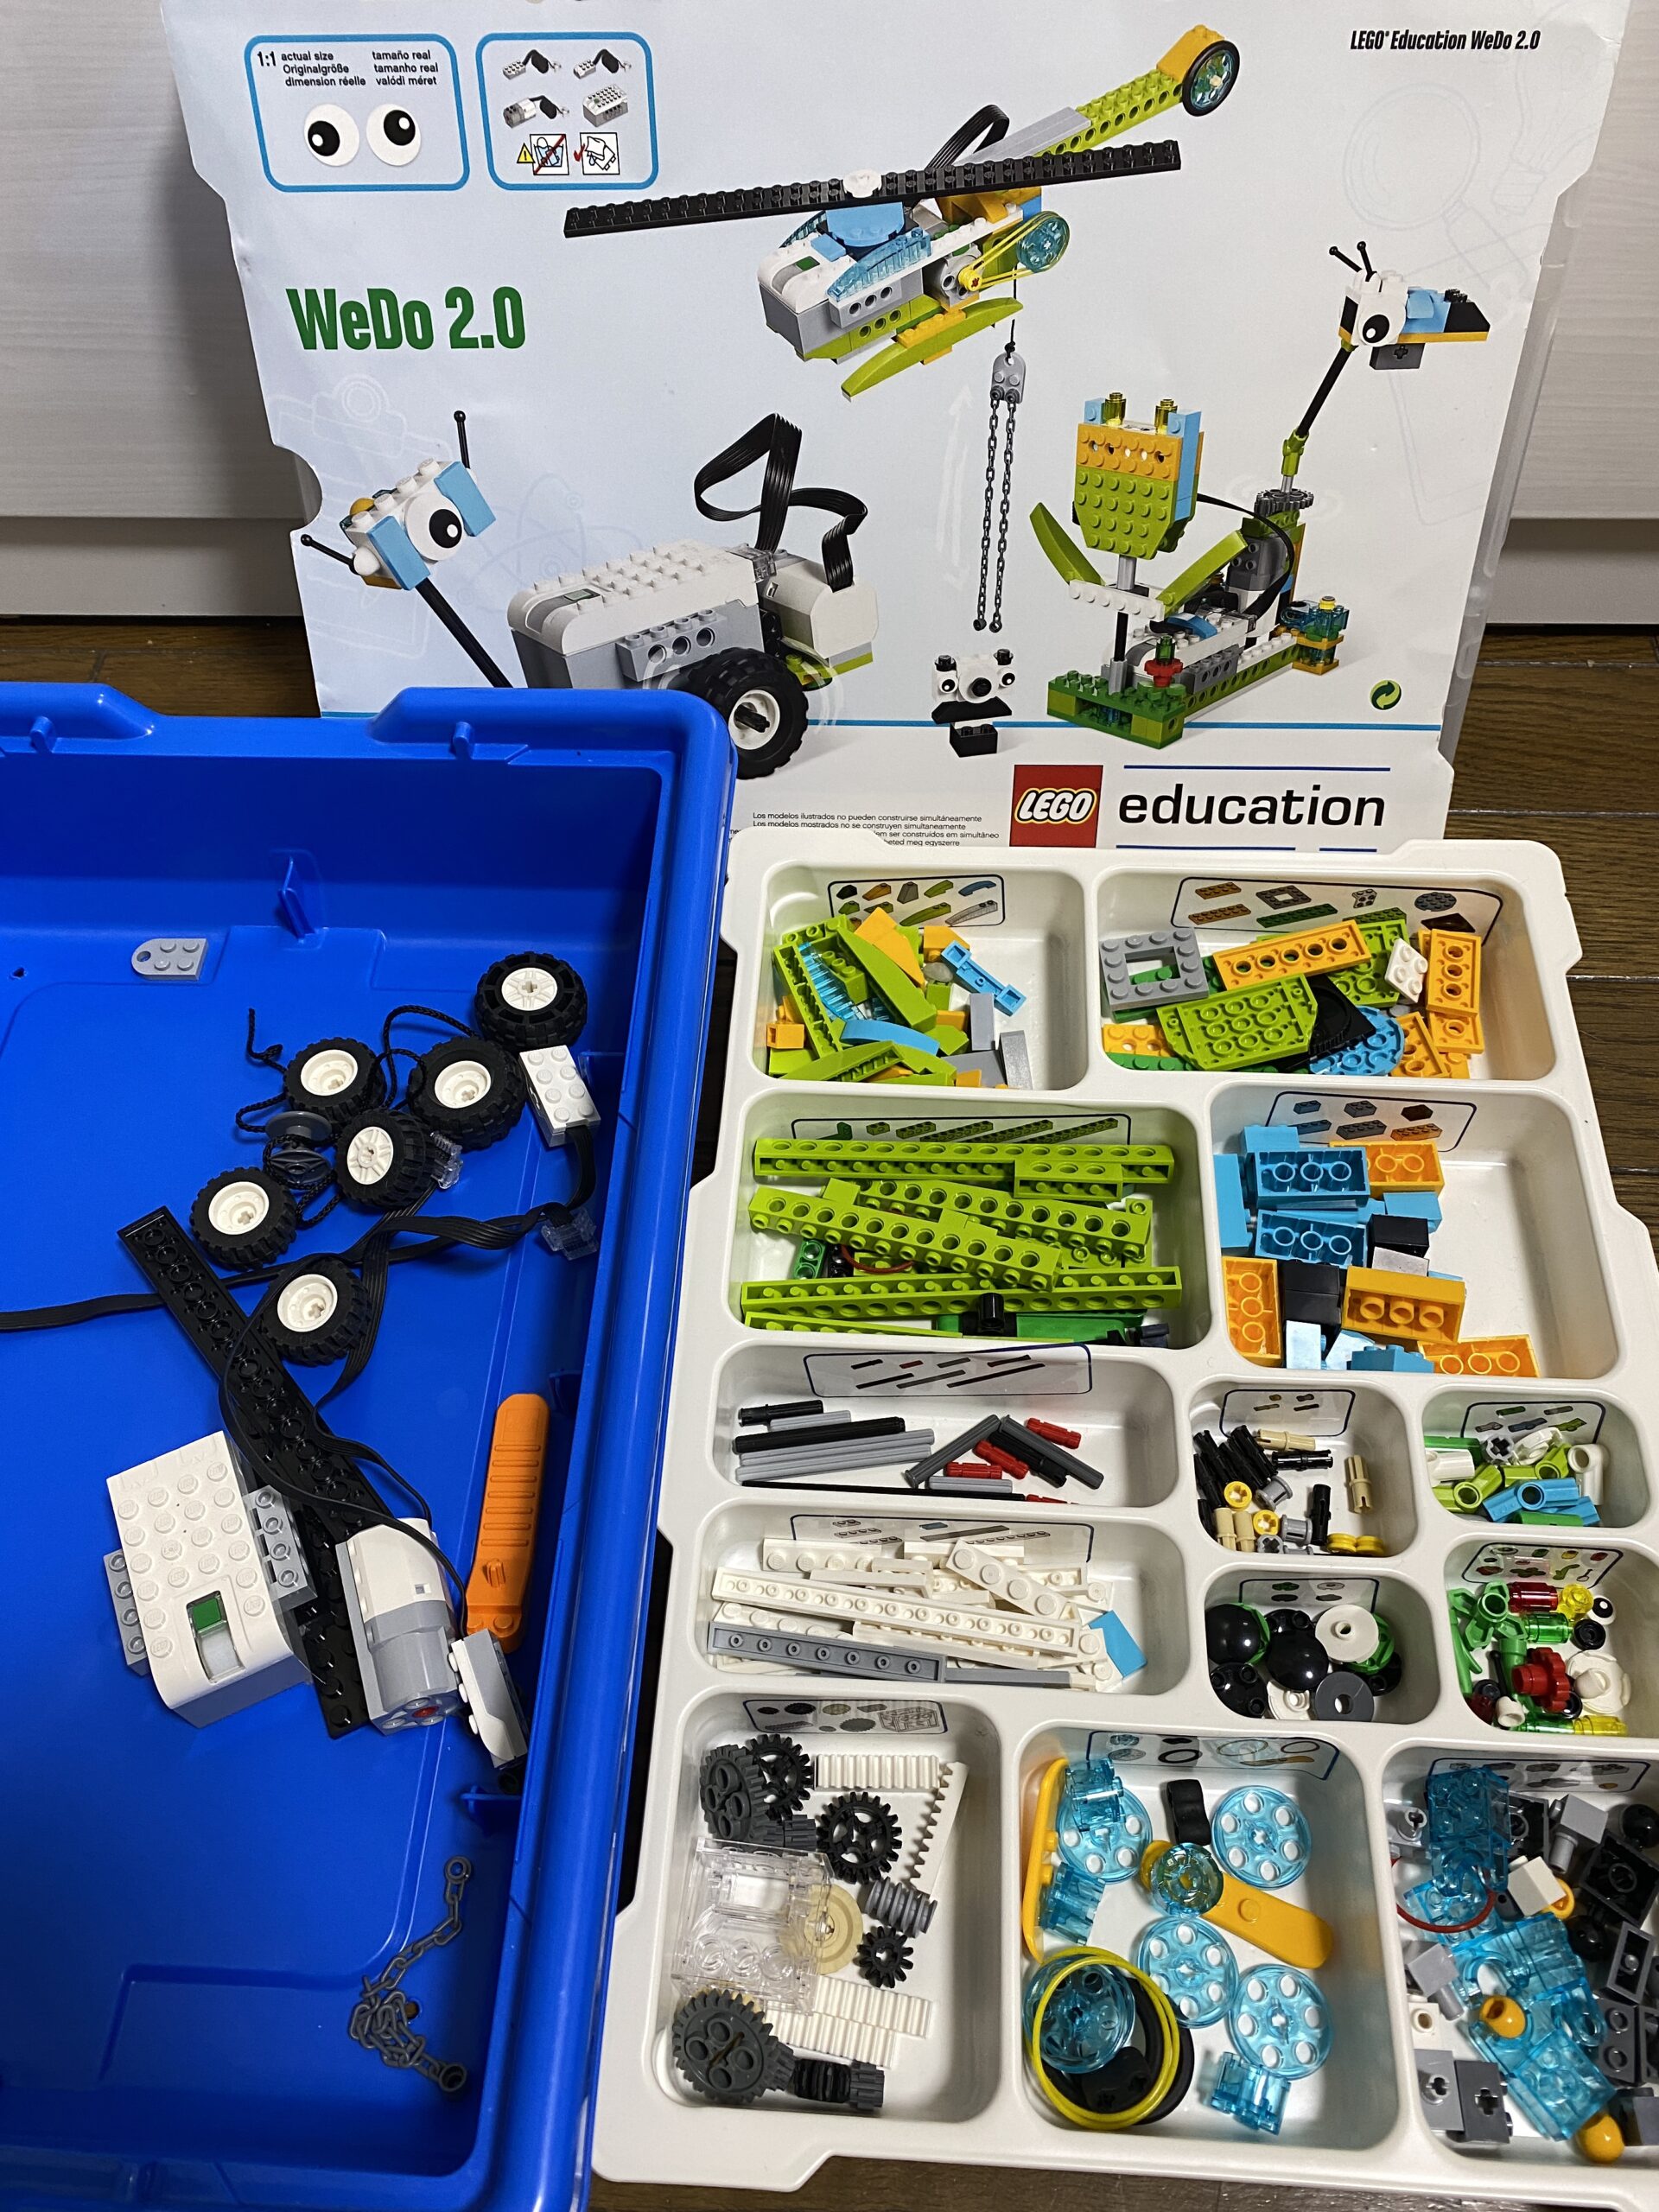 45300 レゴエデュケーション WeDo2.0 基本セット - 知育玩具